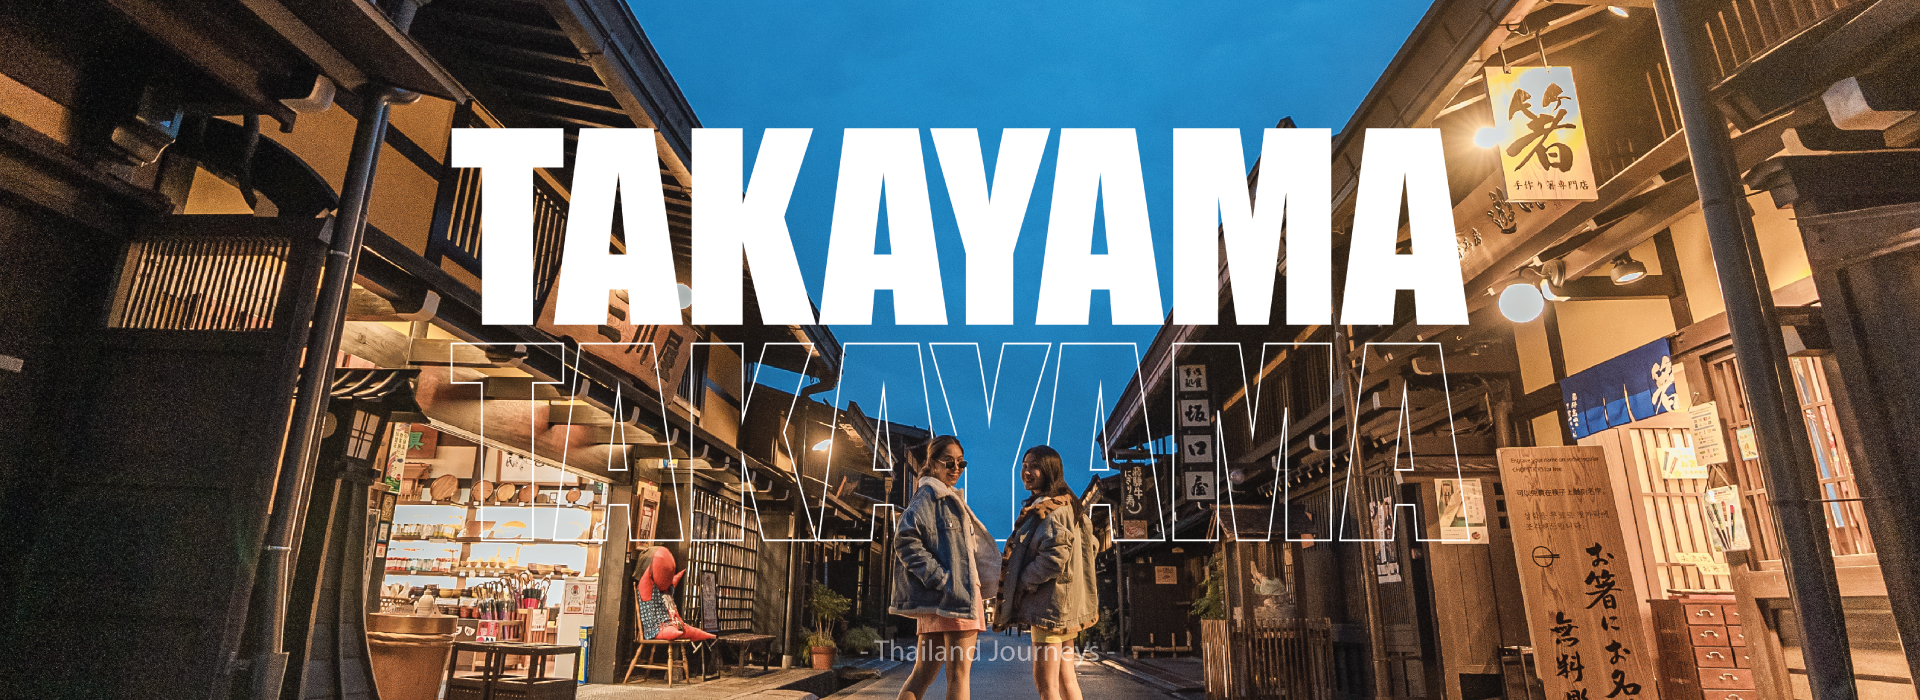 เมืองทาคายาม่า (Takayama)